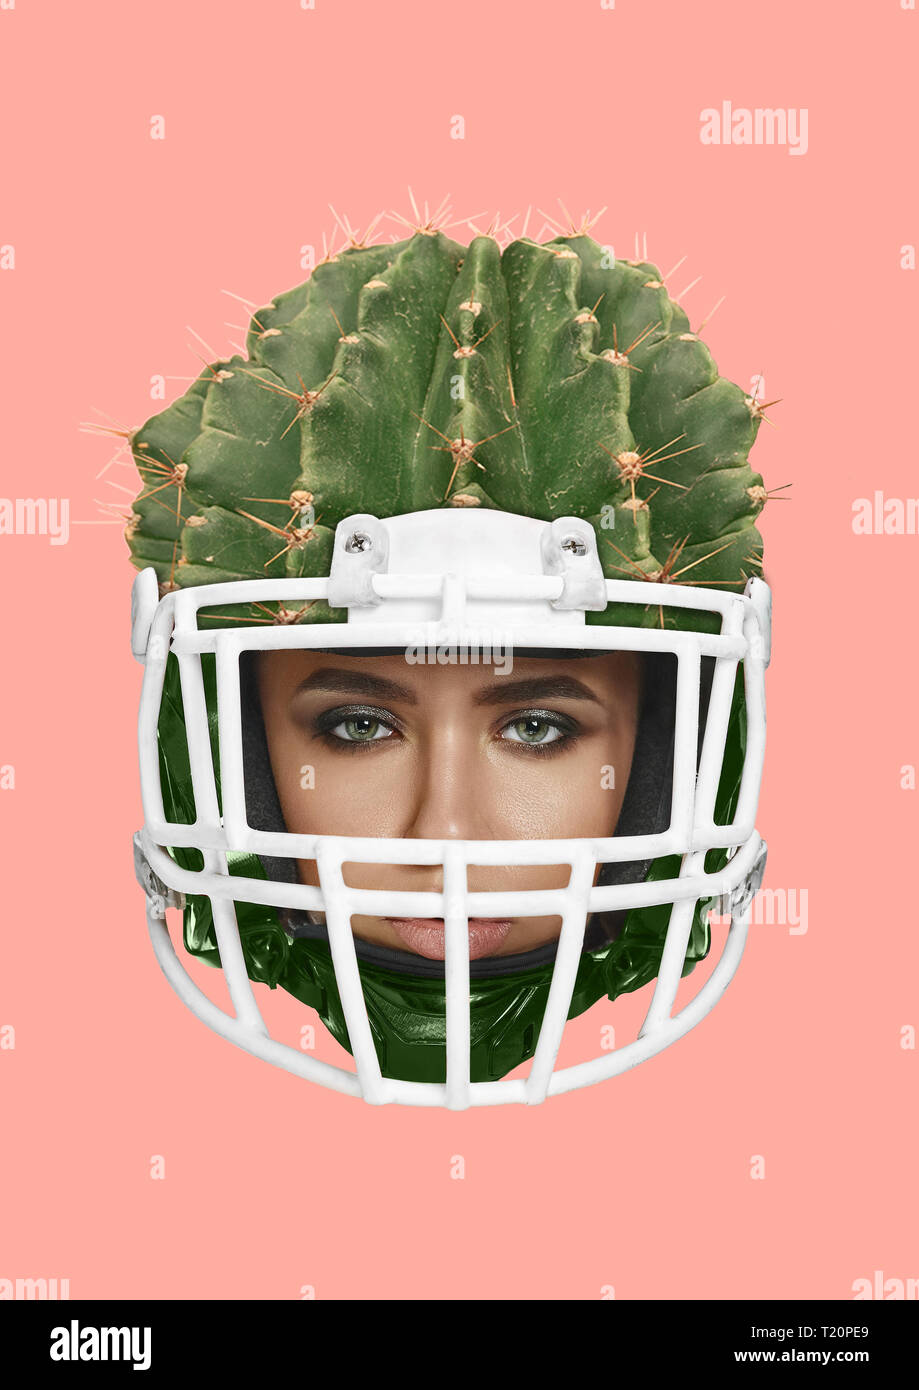 Ein zuverlässiger Schutz und Sicherheit. Weiblicher Kopf im Sport Helm wie ein grüner Kaktus. Schönheit, Feminismus, Schutz der Rechte der Frauen und American Football Thema. Moderne Kunst Collage. Pop Design. Stockfoto